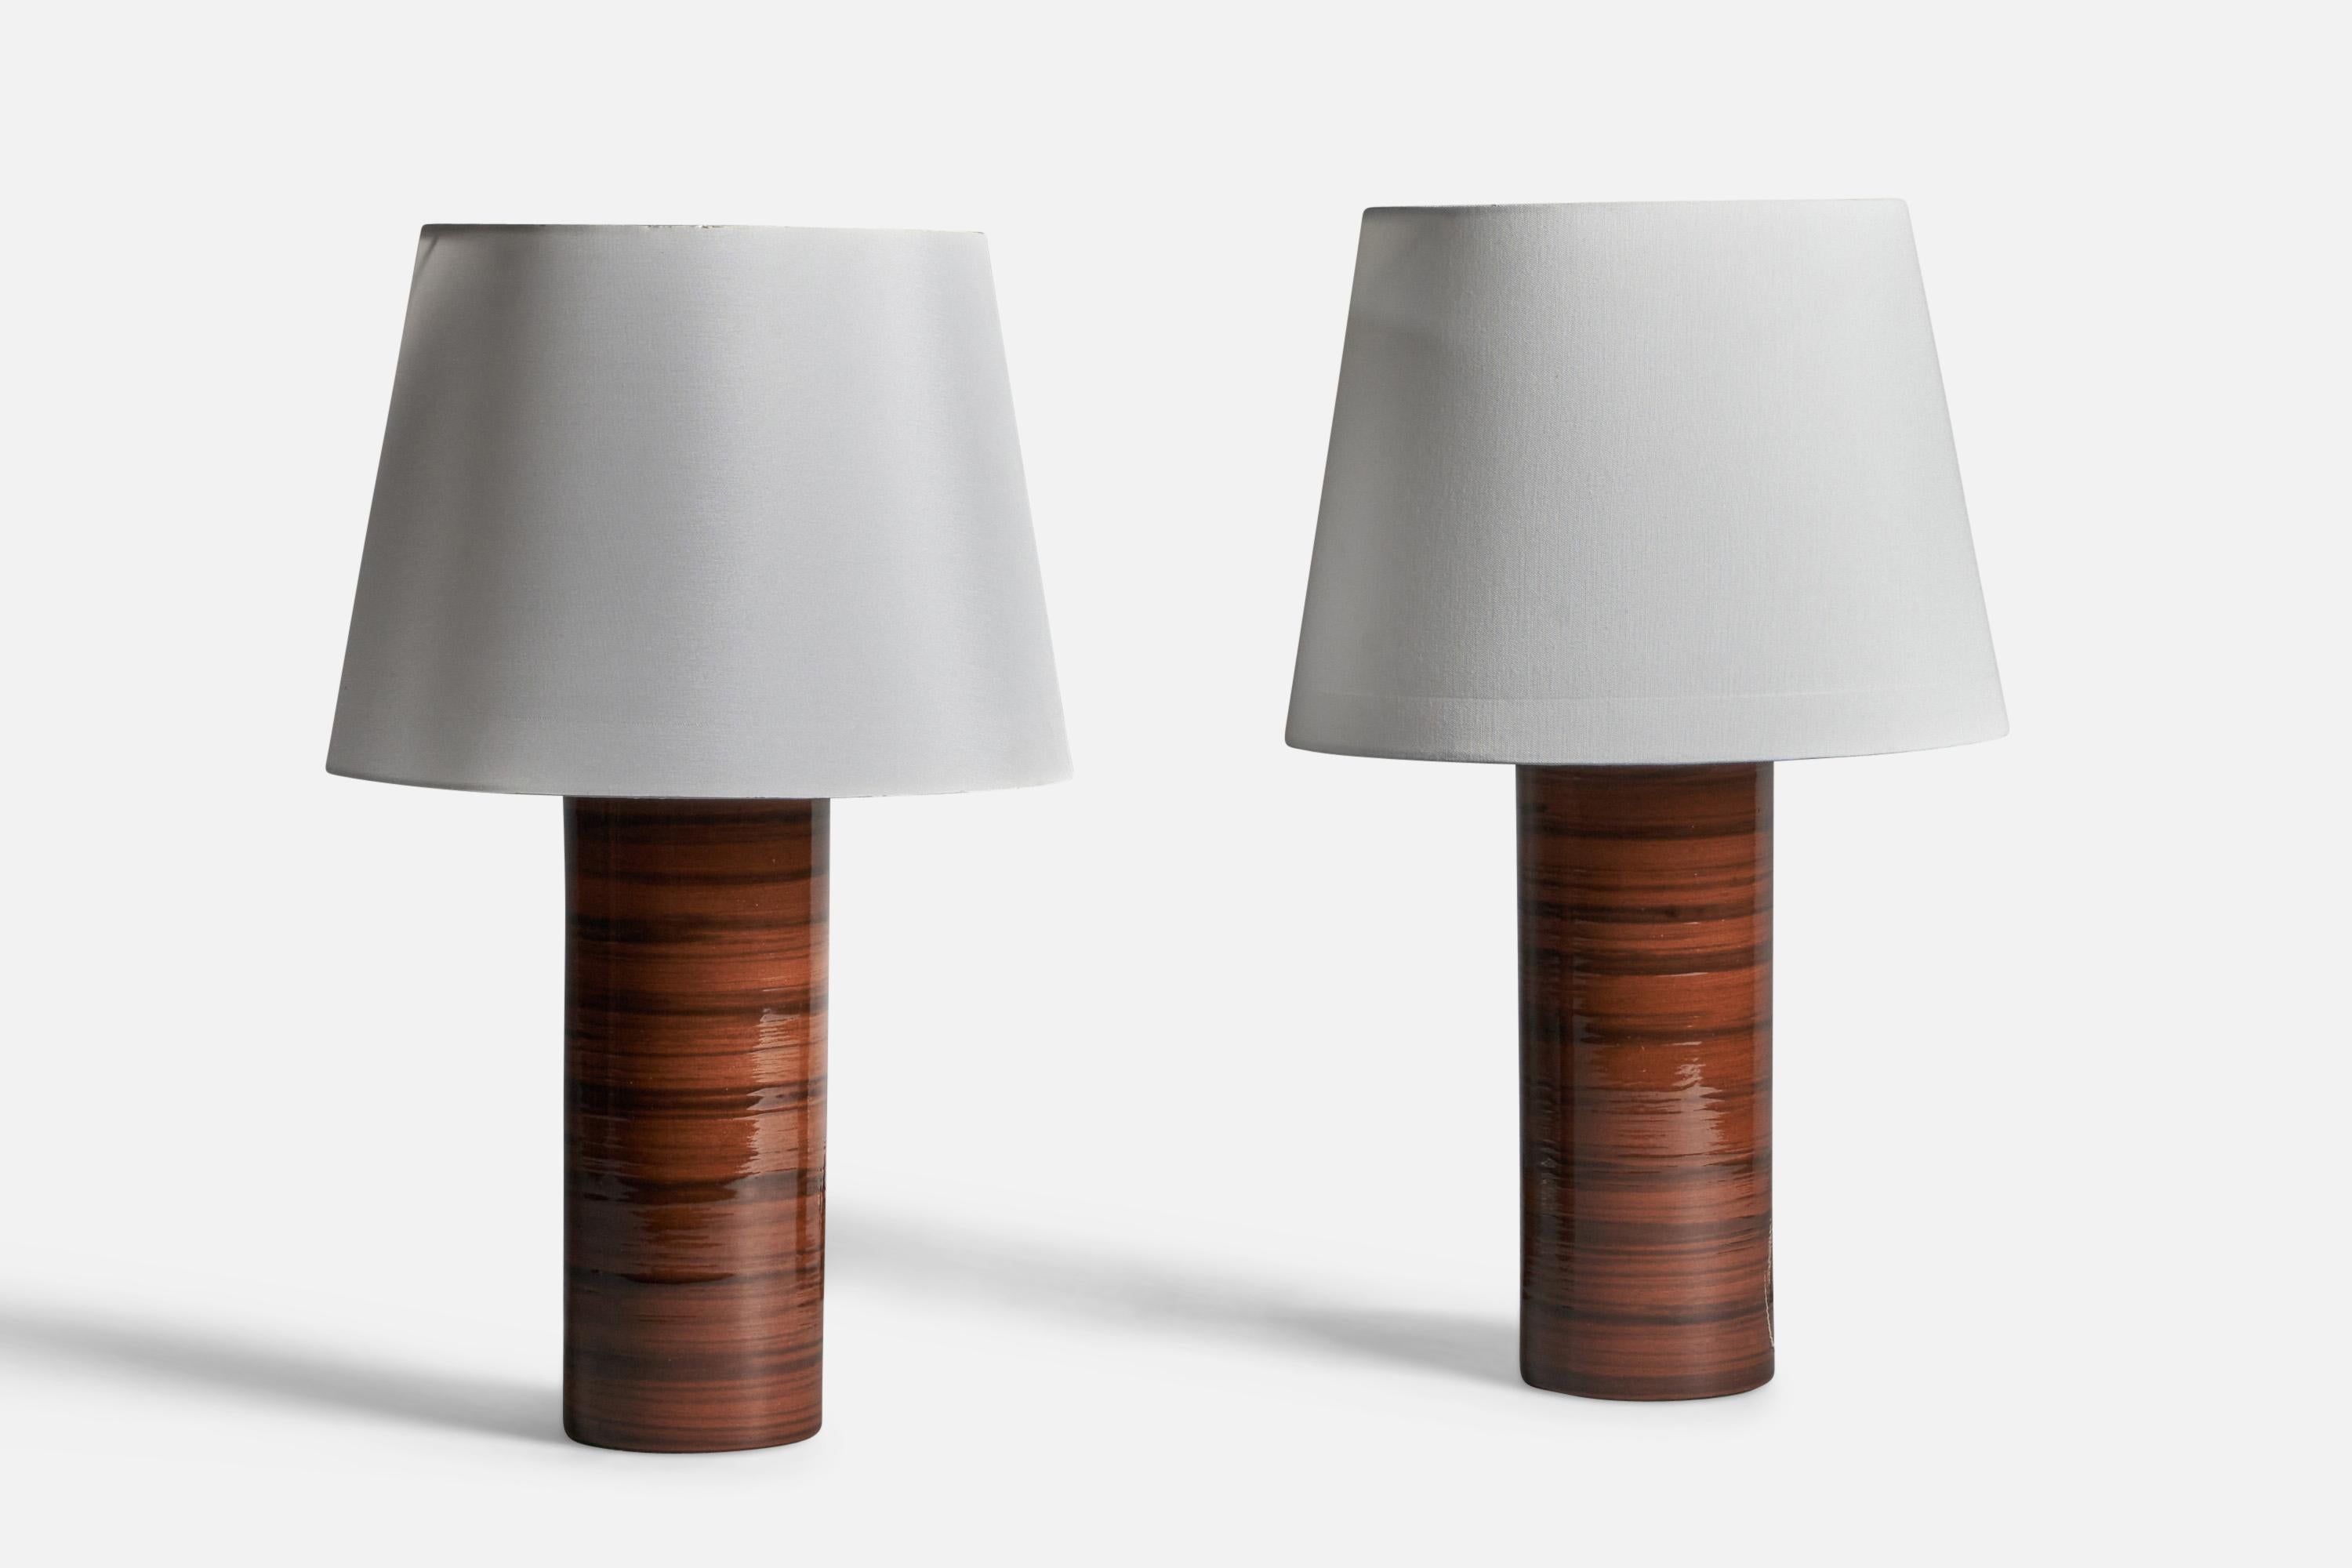 Paire de lampes de table en grès émaillé brun et noir, conçues et produites en Suède, années 1960.

Dimensions de la lampe (pouces) : 14.5